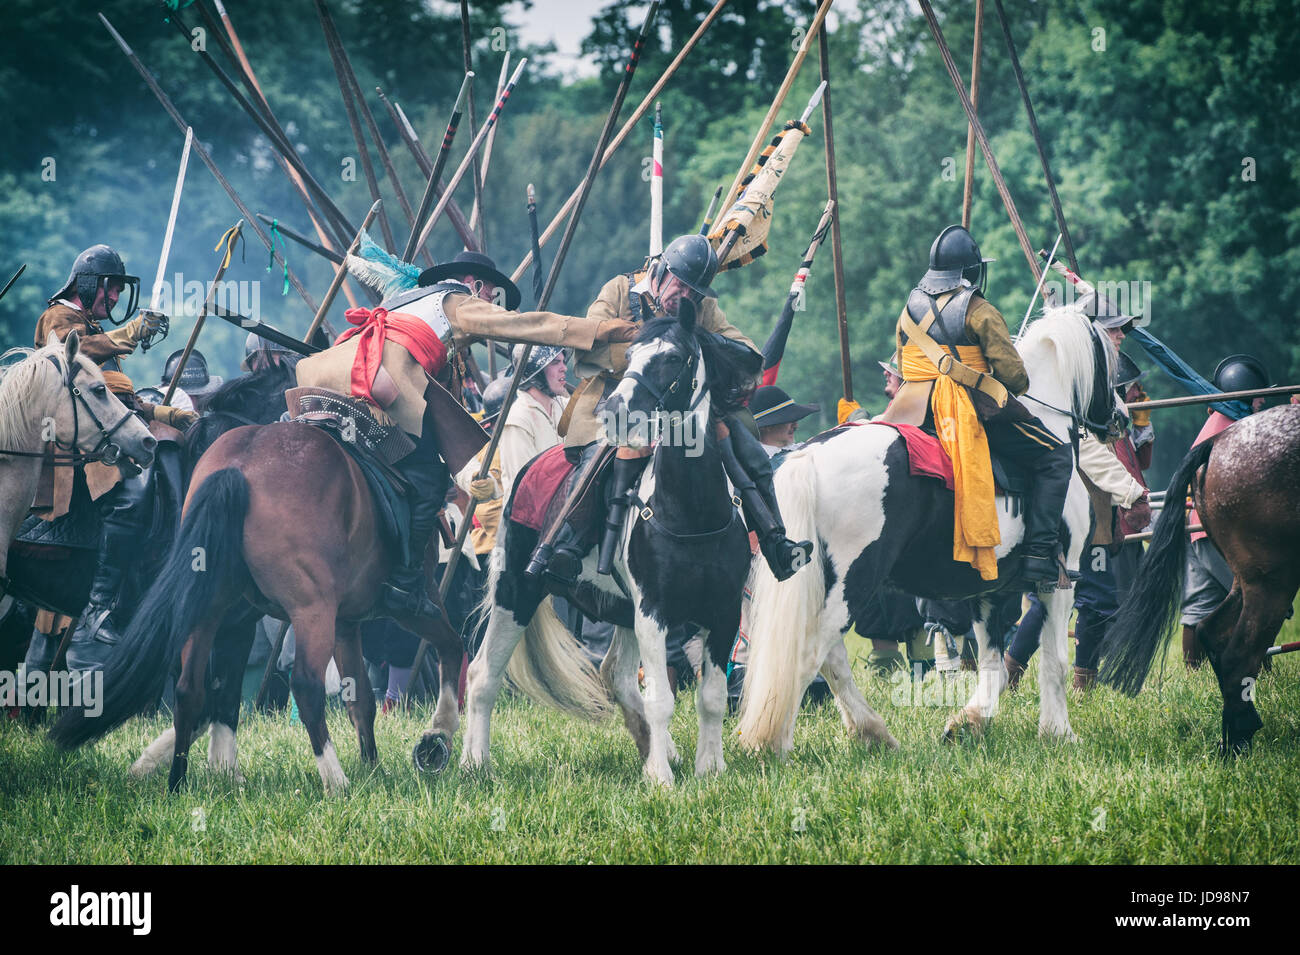 Les parlementaires sur les chevaux dans la bataille de charge à un Hogan-vexel English Civil war reenactment événement. Charlton park, Malmesbury, Wiltshire, Royaume-Uni Banque D'Images